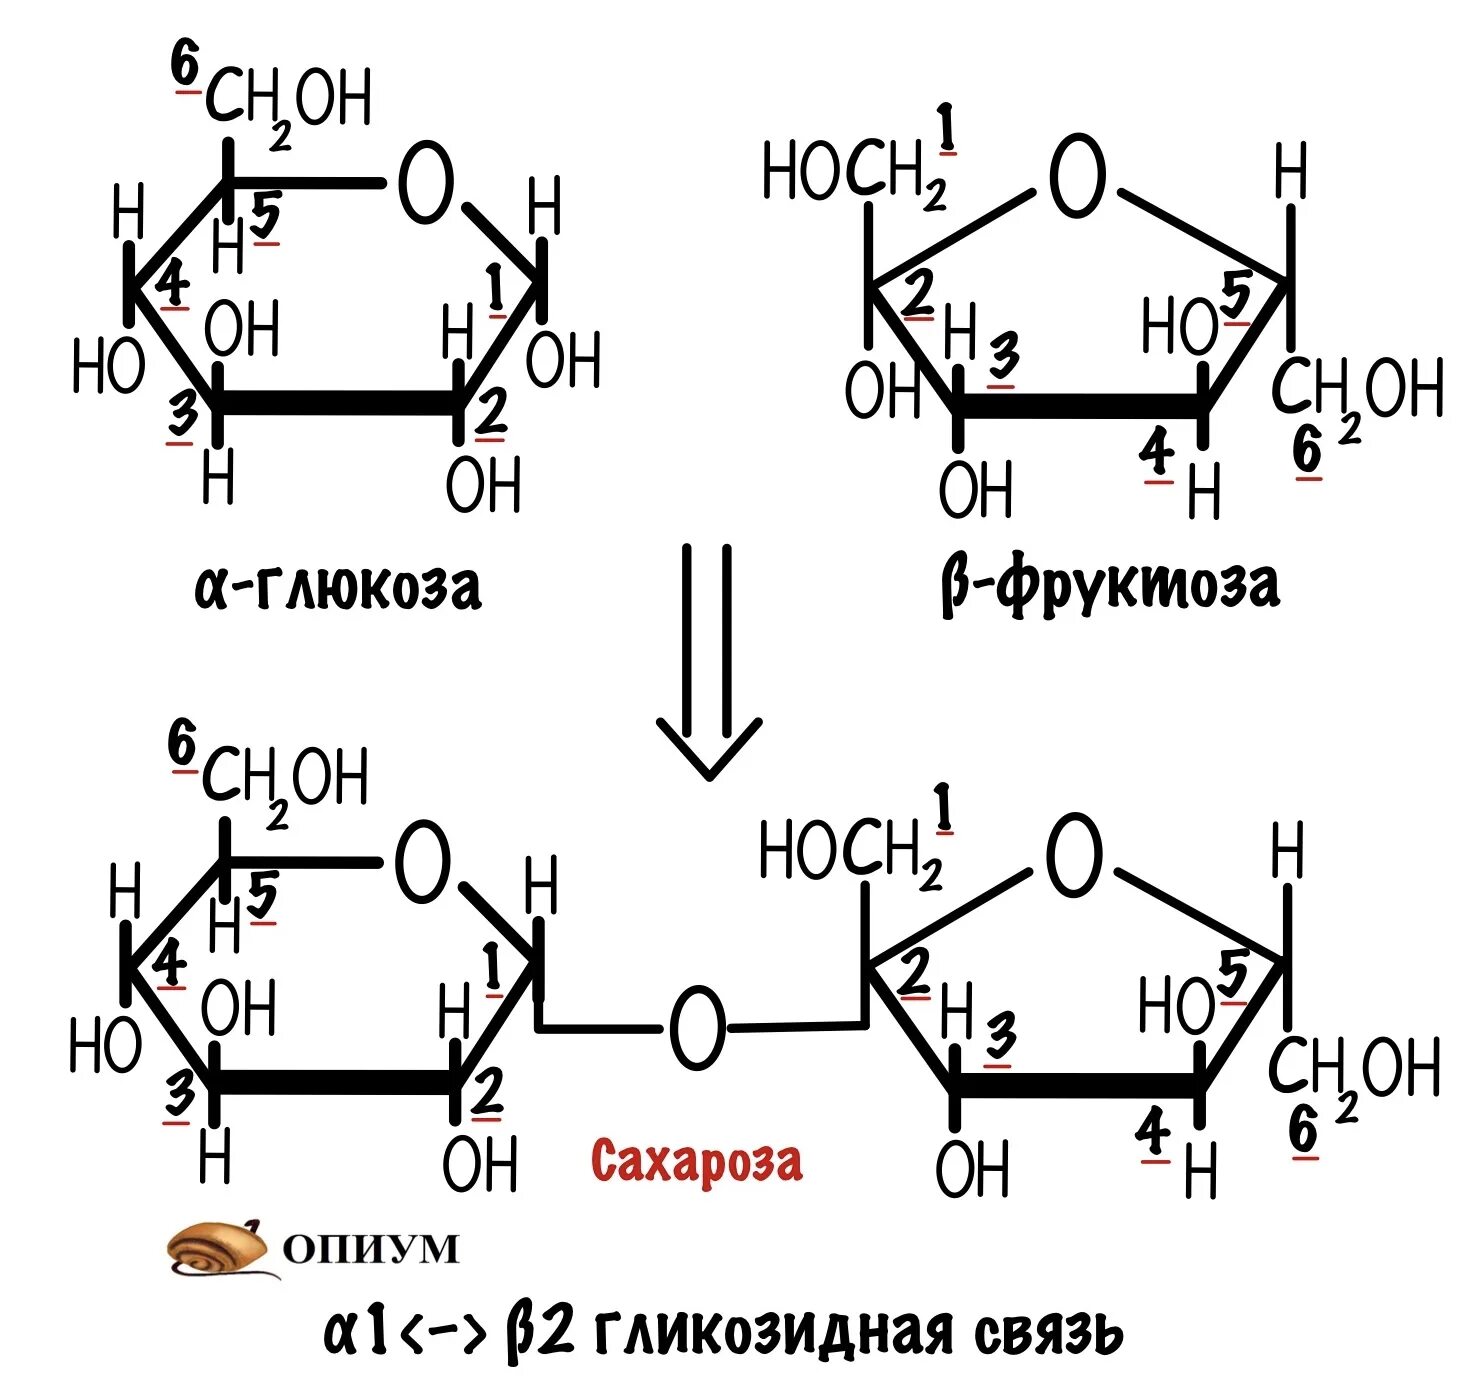 Дисахаридом является глюкоза сахароза. Строение углеводов. Сахароза Геншин. Классификация углеводов моносахариды дисахариды и полисахариды. Формулы моносахаридов и дисахаридов и полисахаридов.